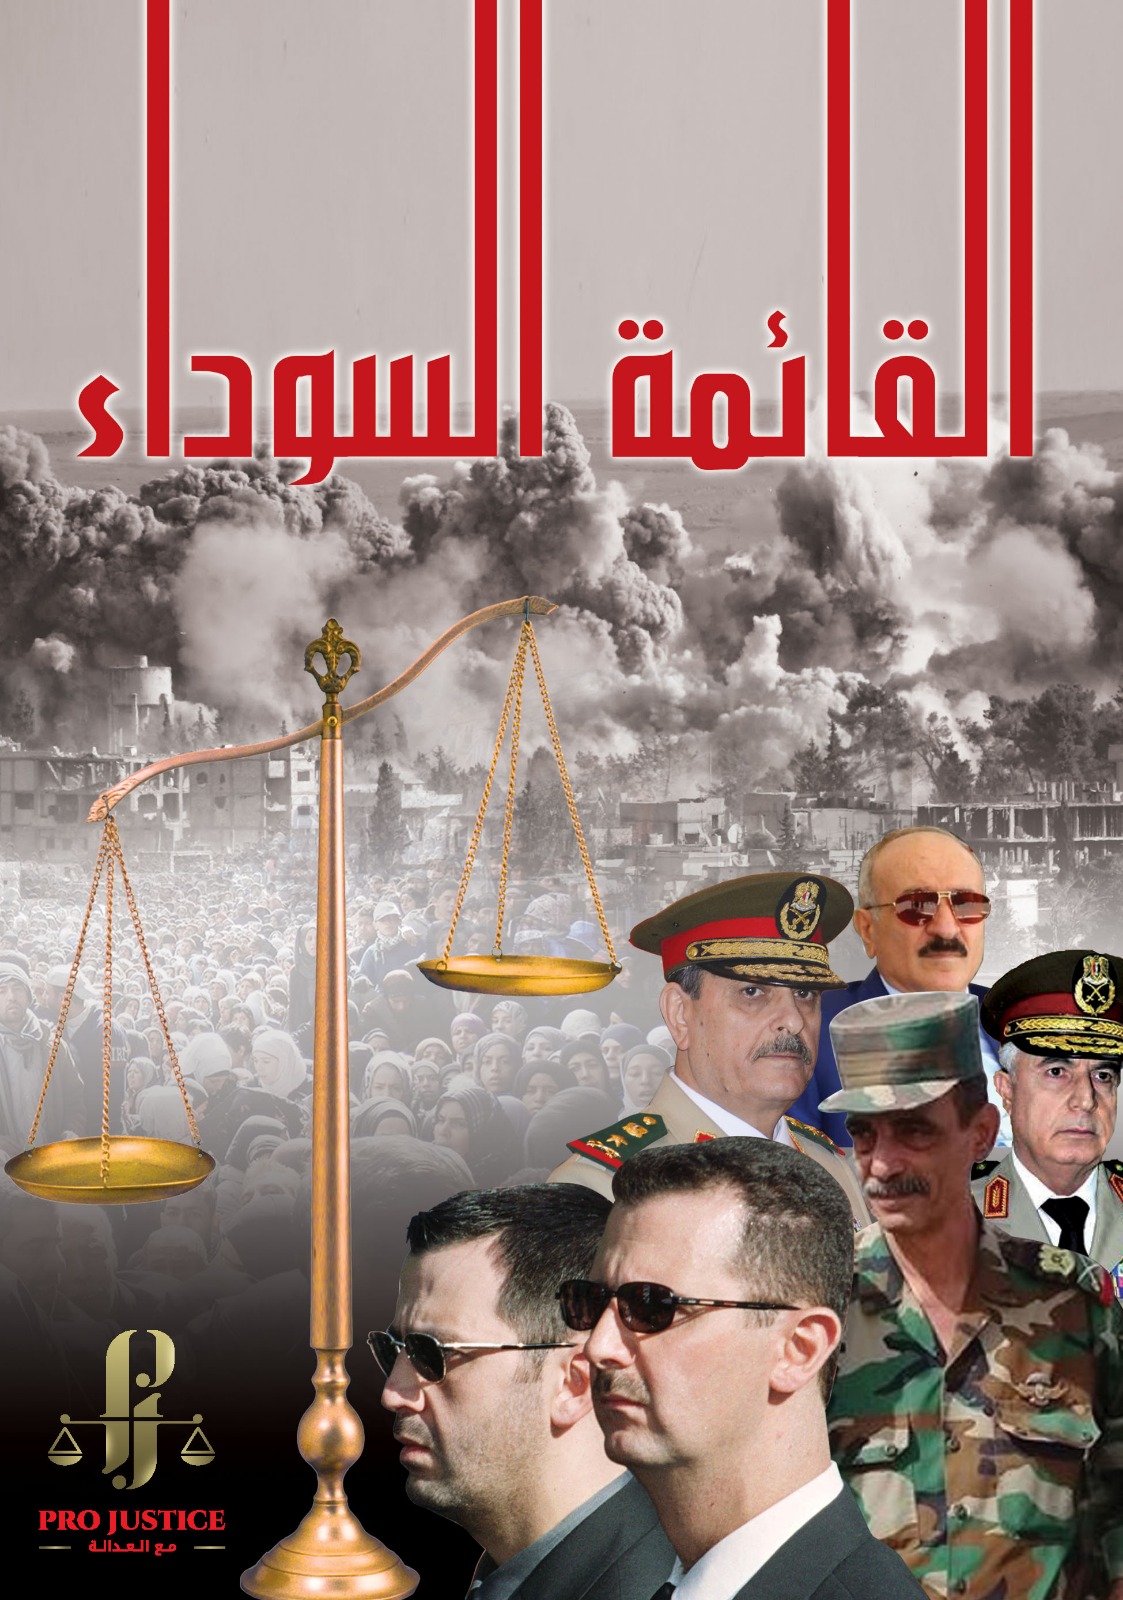 Blacklist: book on war criminals in Syria